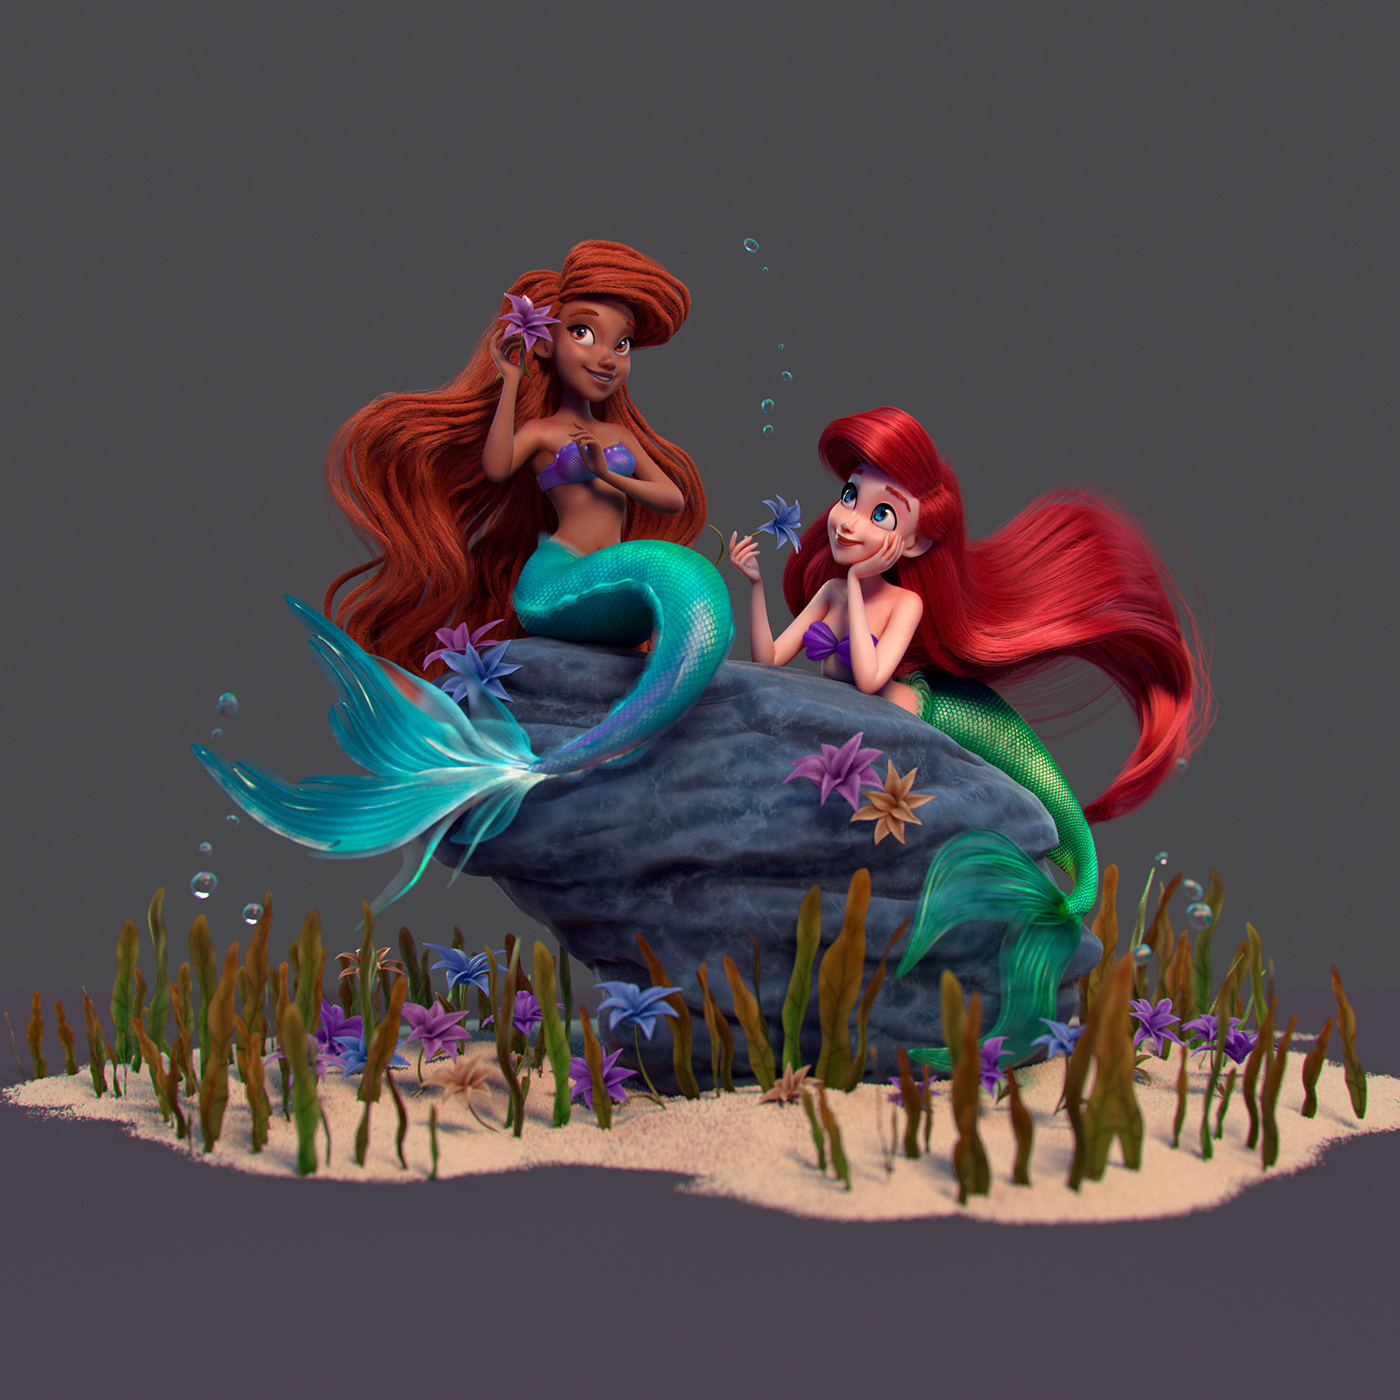 3ds max artist artwork cartoon Character design  Digital Art  disney fantasy ILLUSTRATION  mermaid